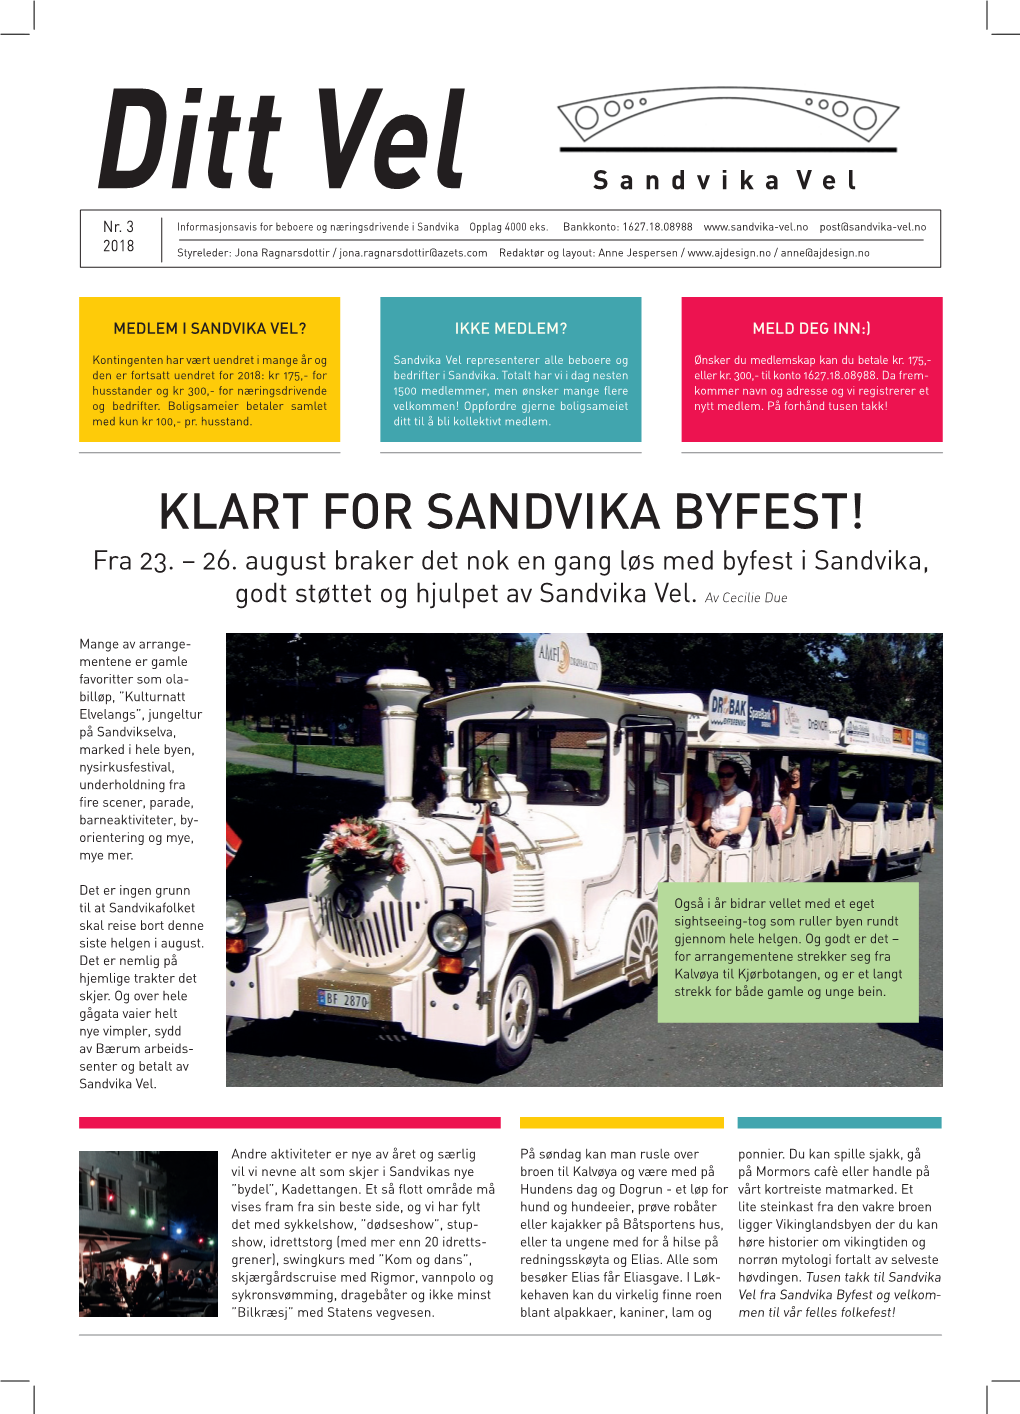 KLART for SANDVIKA BYFEST! Fra 23